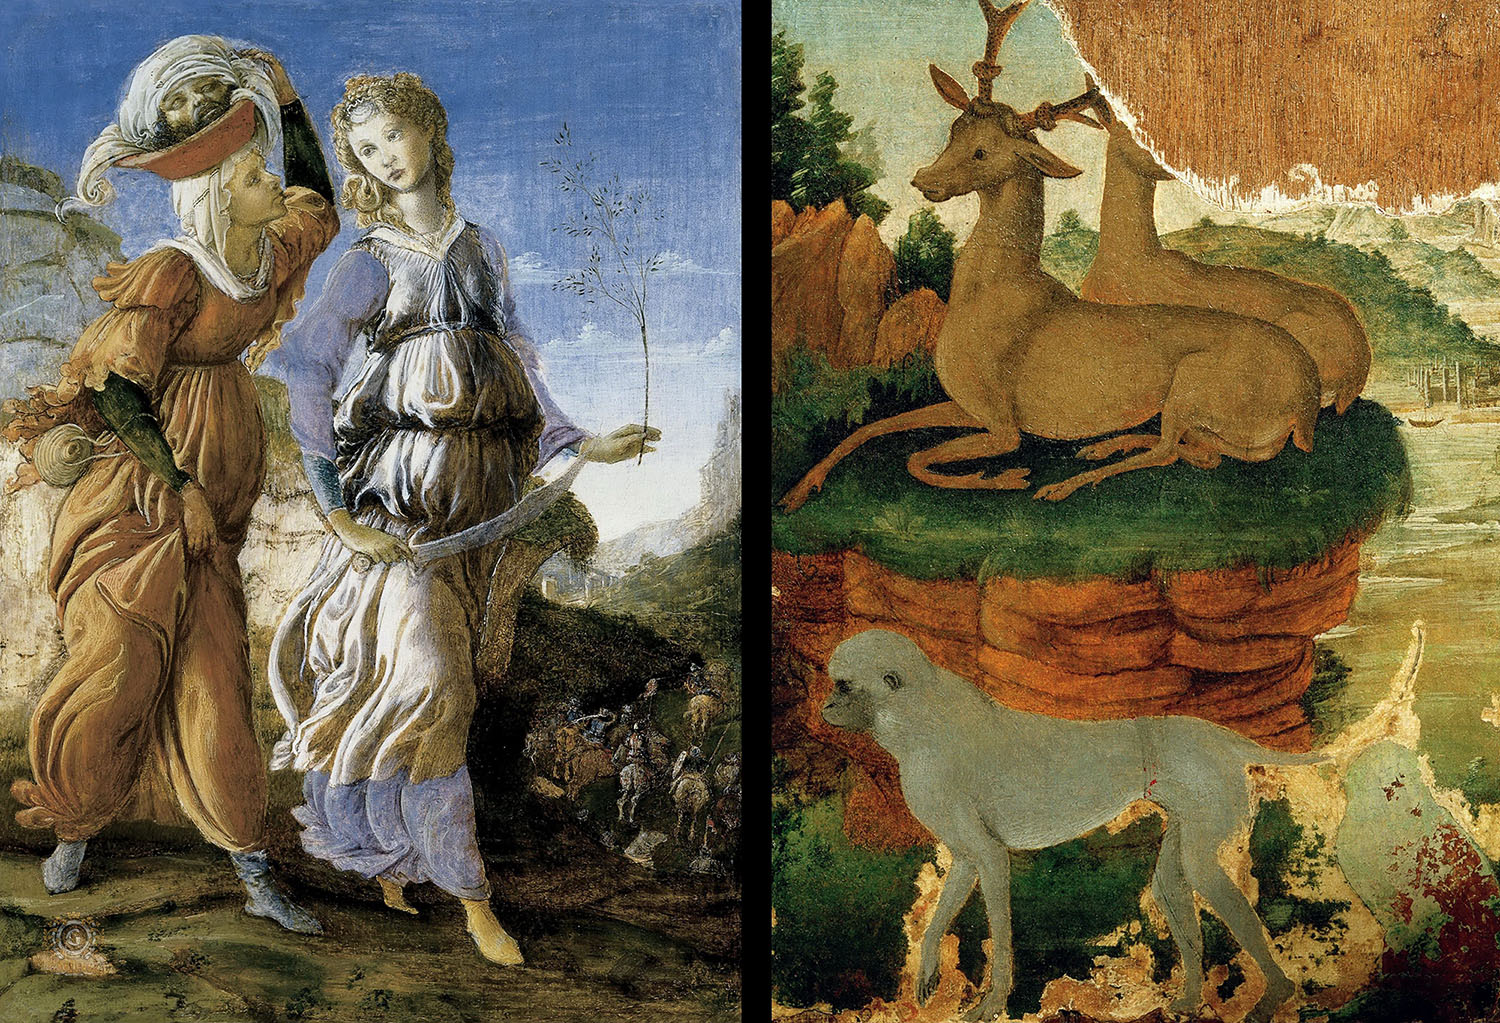 Сандро Боттичелли. "Возвращение Юдифи (лицевая сторона) и Пейзаж с косулями и обезьяной (оборотная сторона)". Около 1470. Музей искусств, Цинциннати.